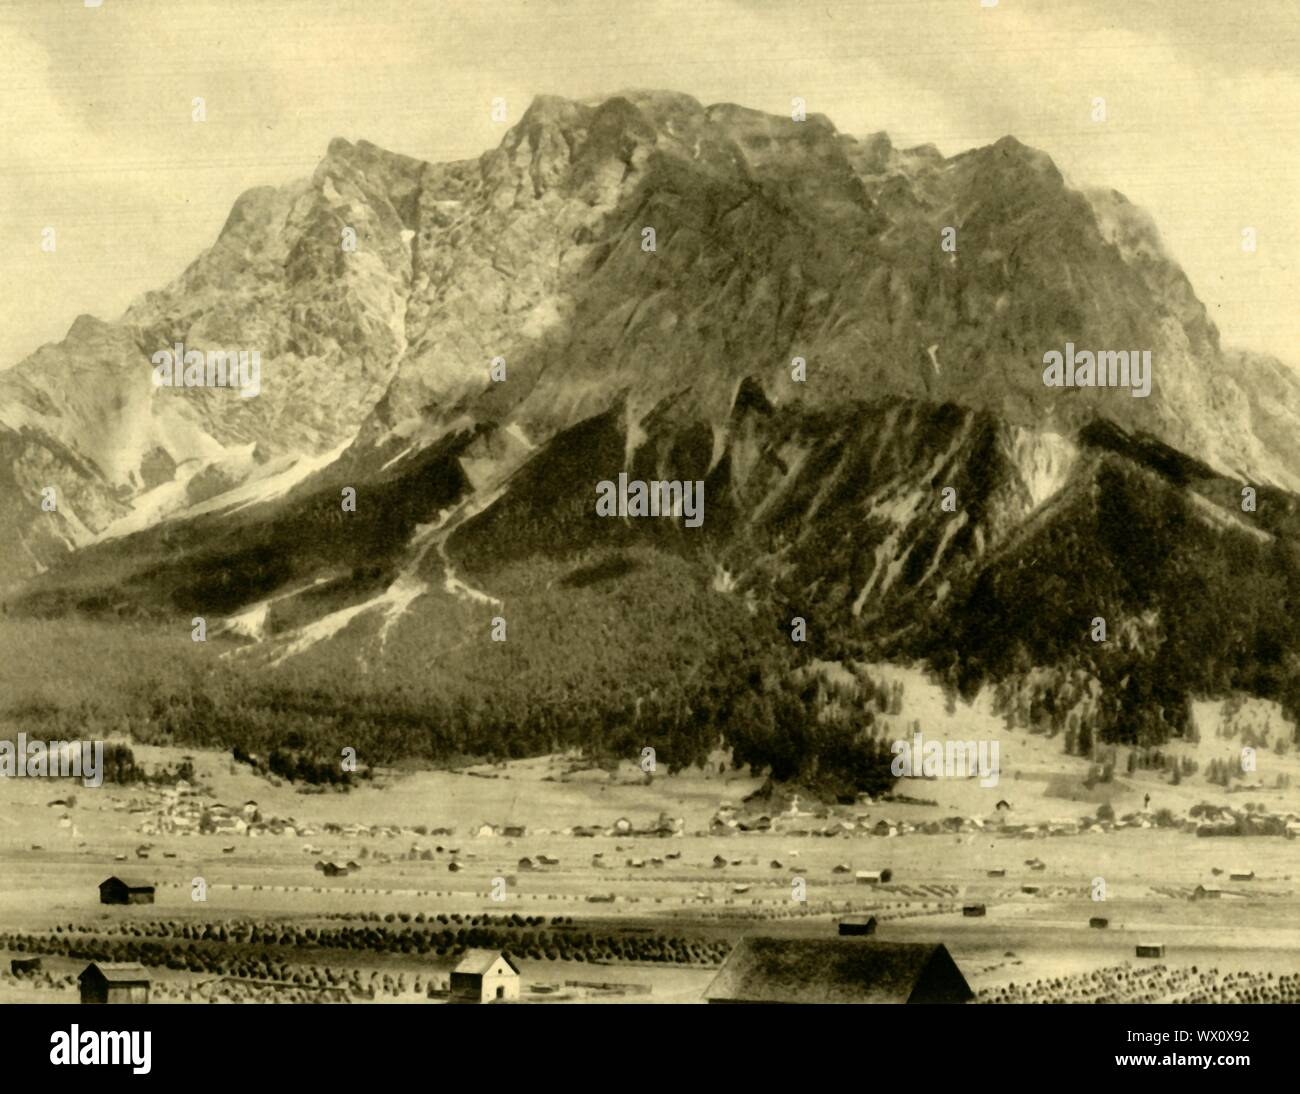 Ehrwald e le montagne del Wetterstein, Tirolo, Austria, c1935. Vista della città di Ehrwald nelle Alpi austriache. Da "&#xd6;sterreich - Land und Volk", (l'Austria, la terra e la gente). [R. Lechner (Wilhelm M&#xfc;iler), Vienna, c1935] Foto Stock